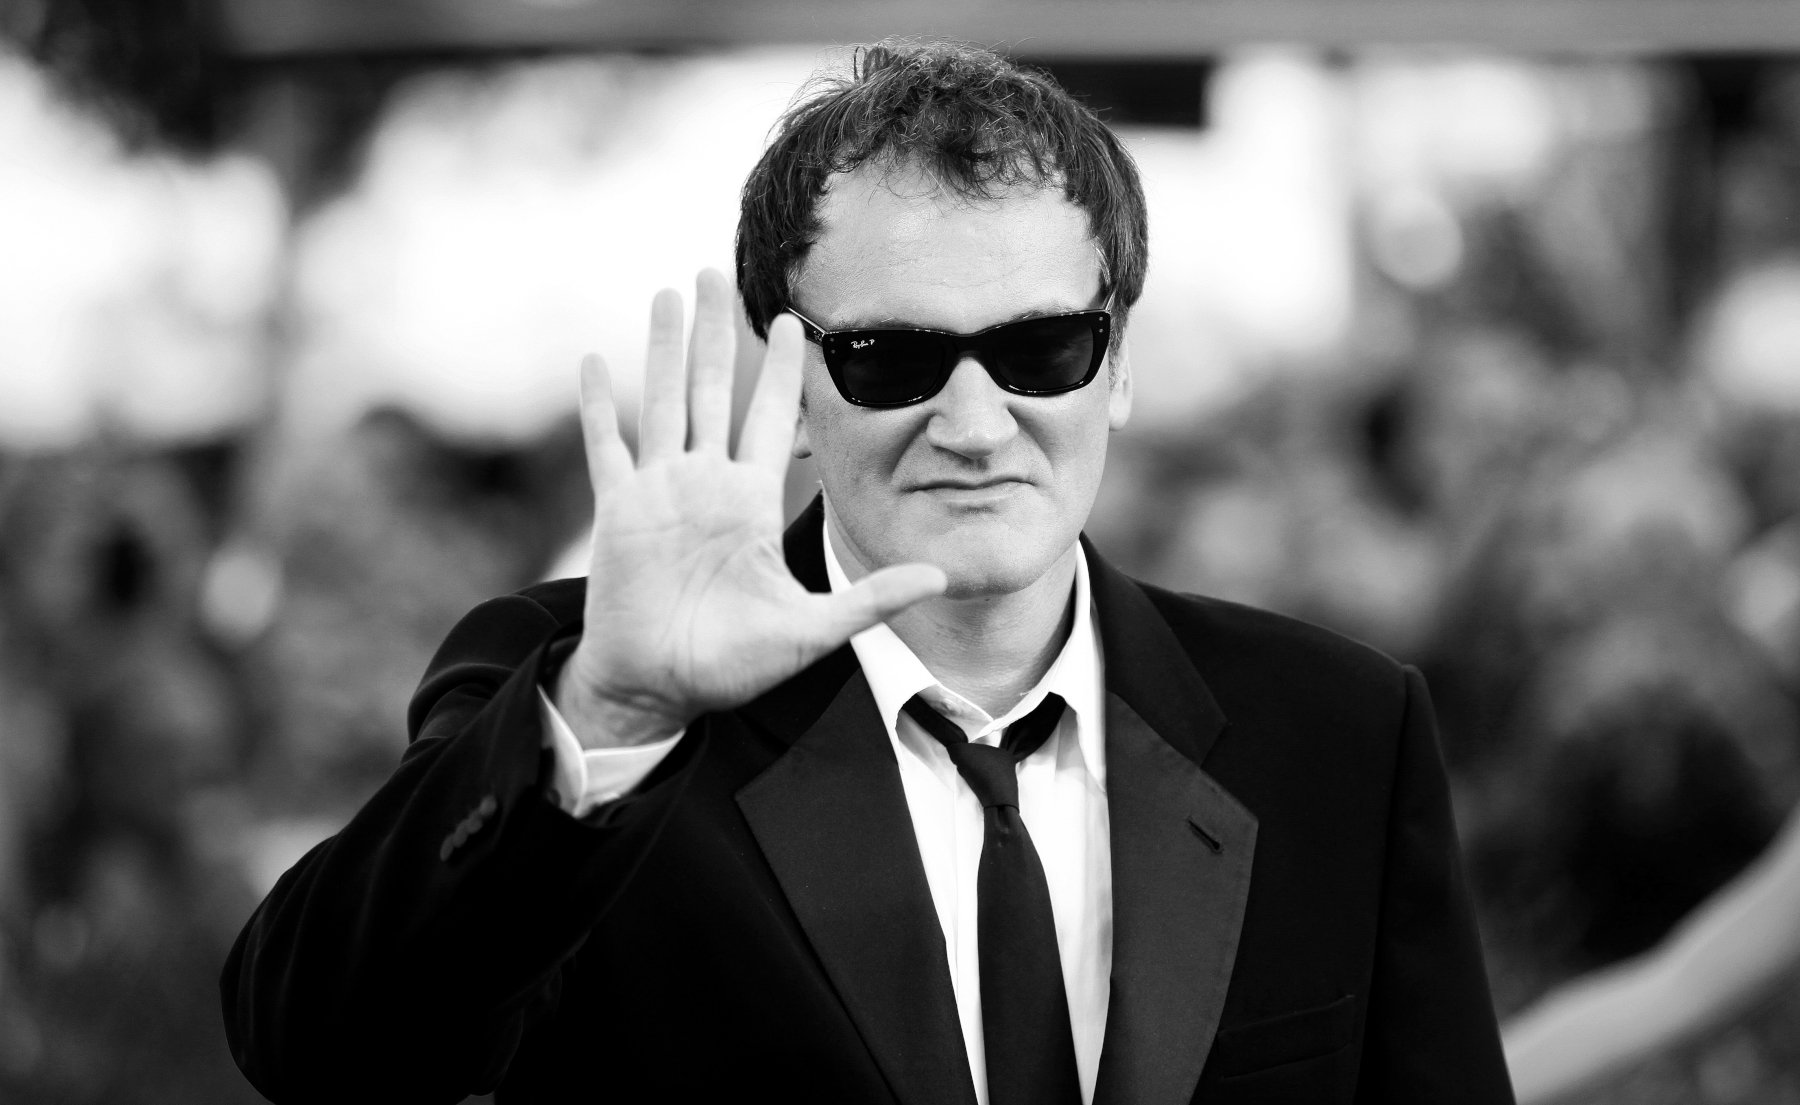 Ο «μετριόφρων» κύριος Quentin Tarantino: Η απάντηση του για το φετίχ με τα πόδια δεν εξέπληξε κανέναν